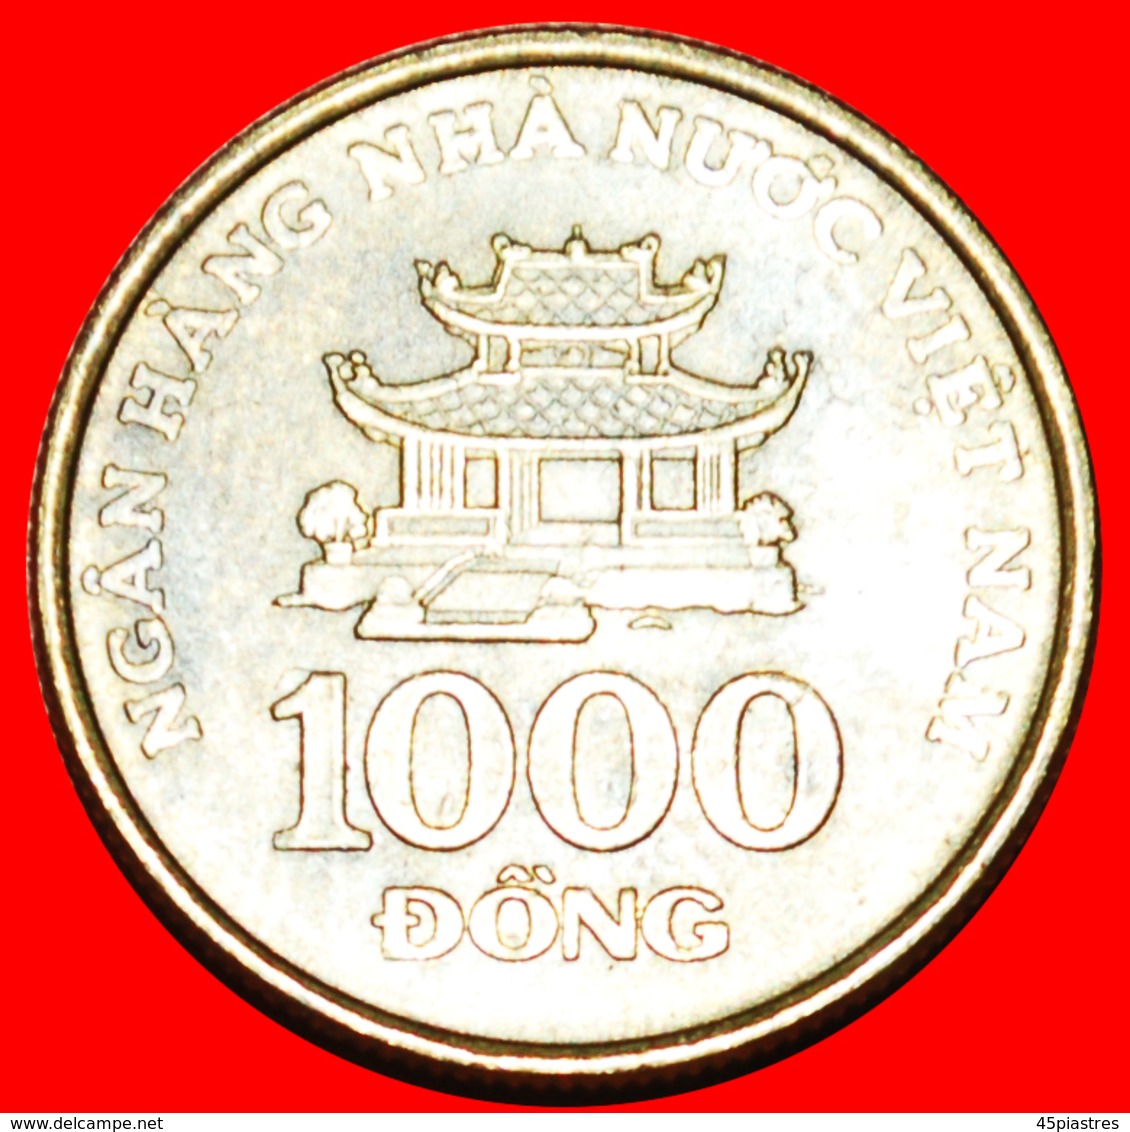 + FINLAND: VIETNAM ★ 1000 DONG 2003! LOW START ★ NO RESERVE! - Viêt-Nam